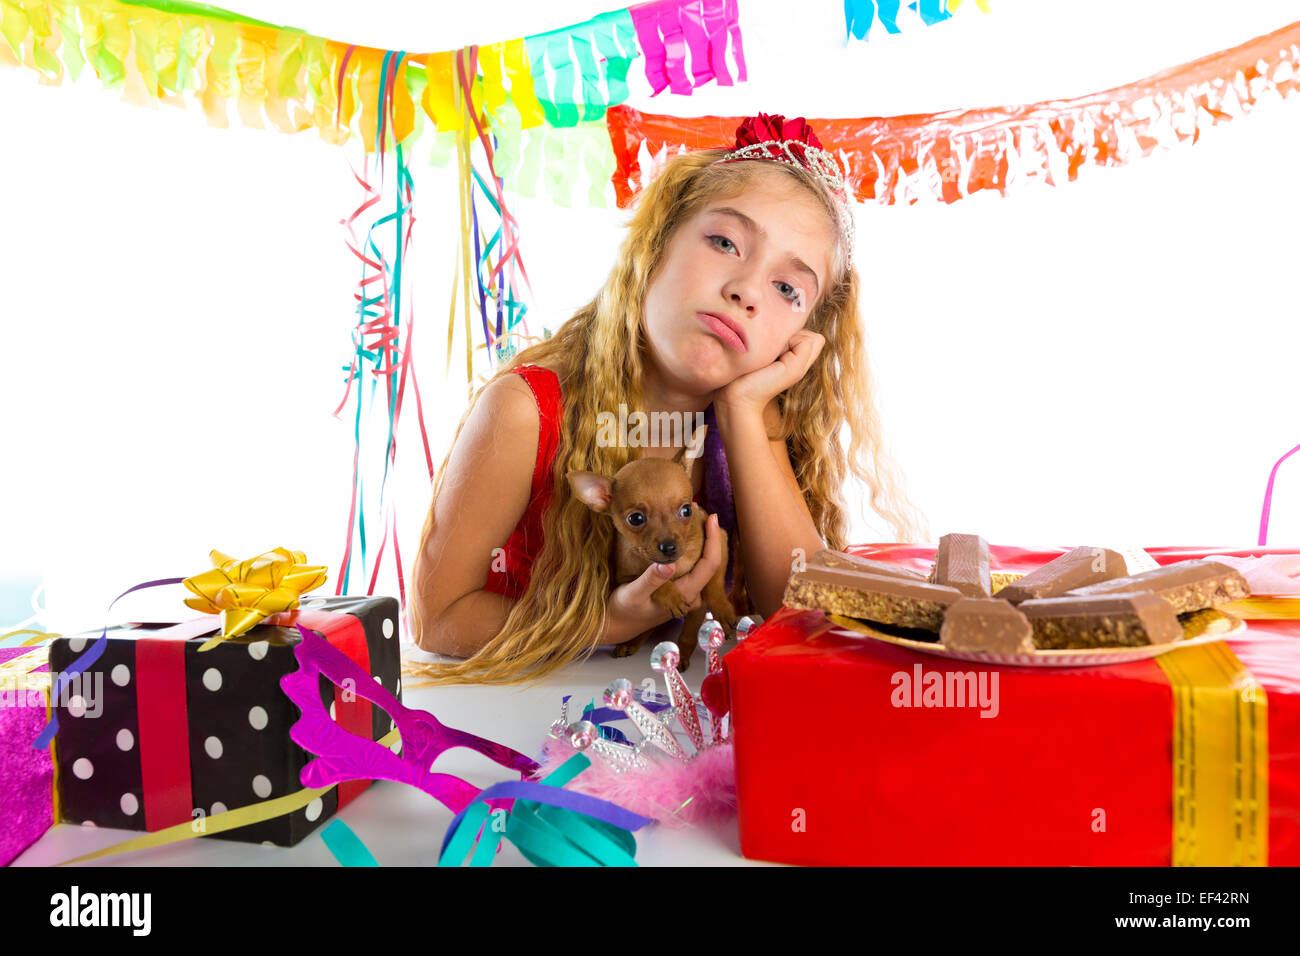 Geste ennuyé kid girl blonde en partie avec des chocolats et chiot chihuahua dog Banque D'Images